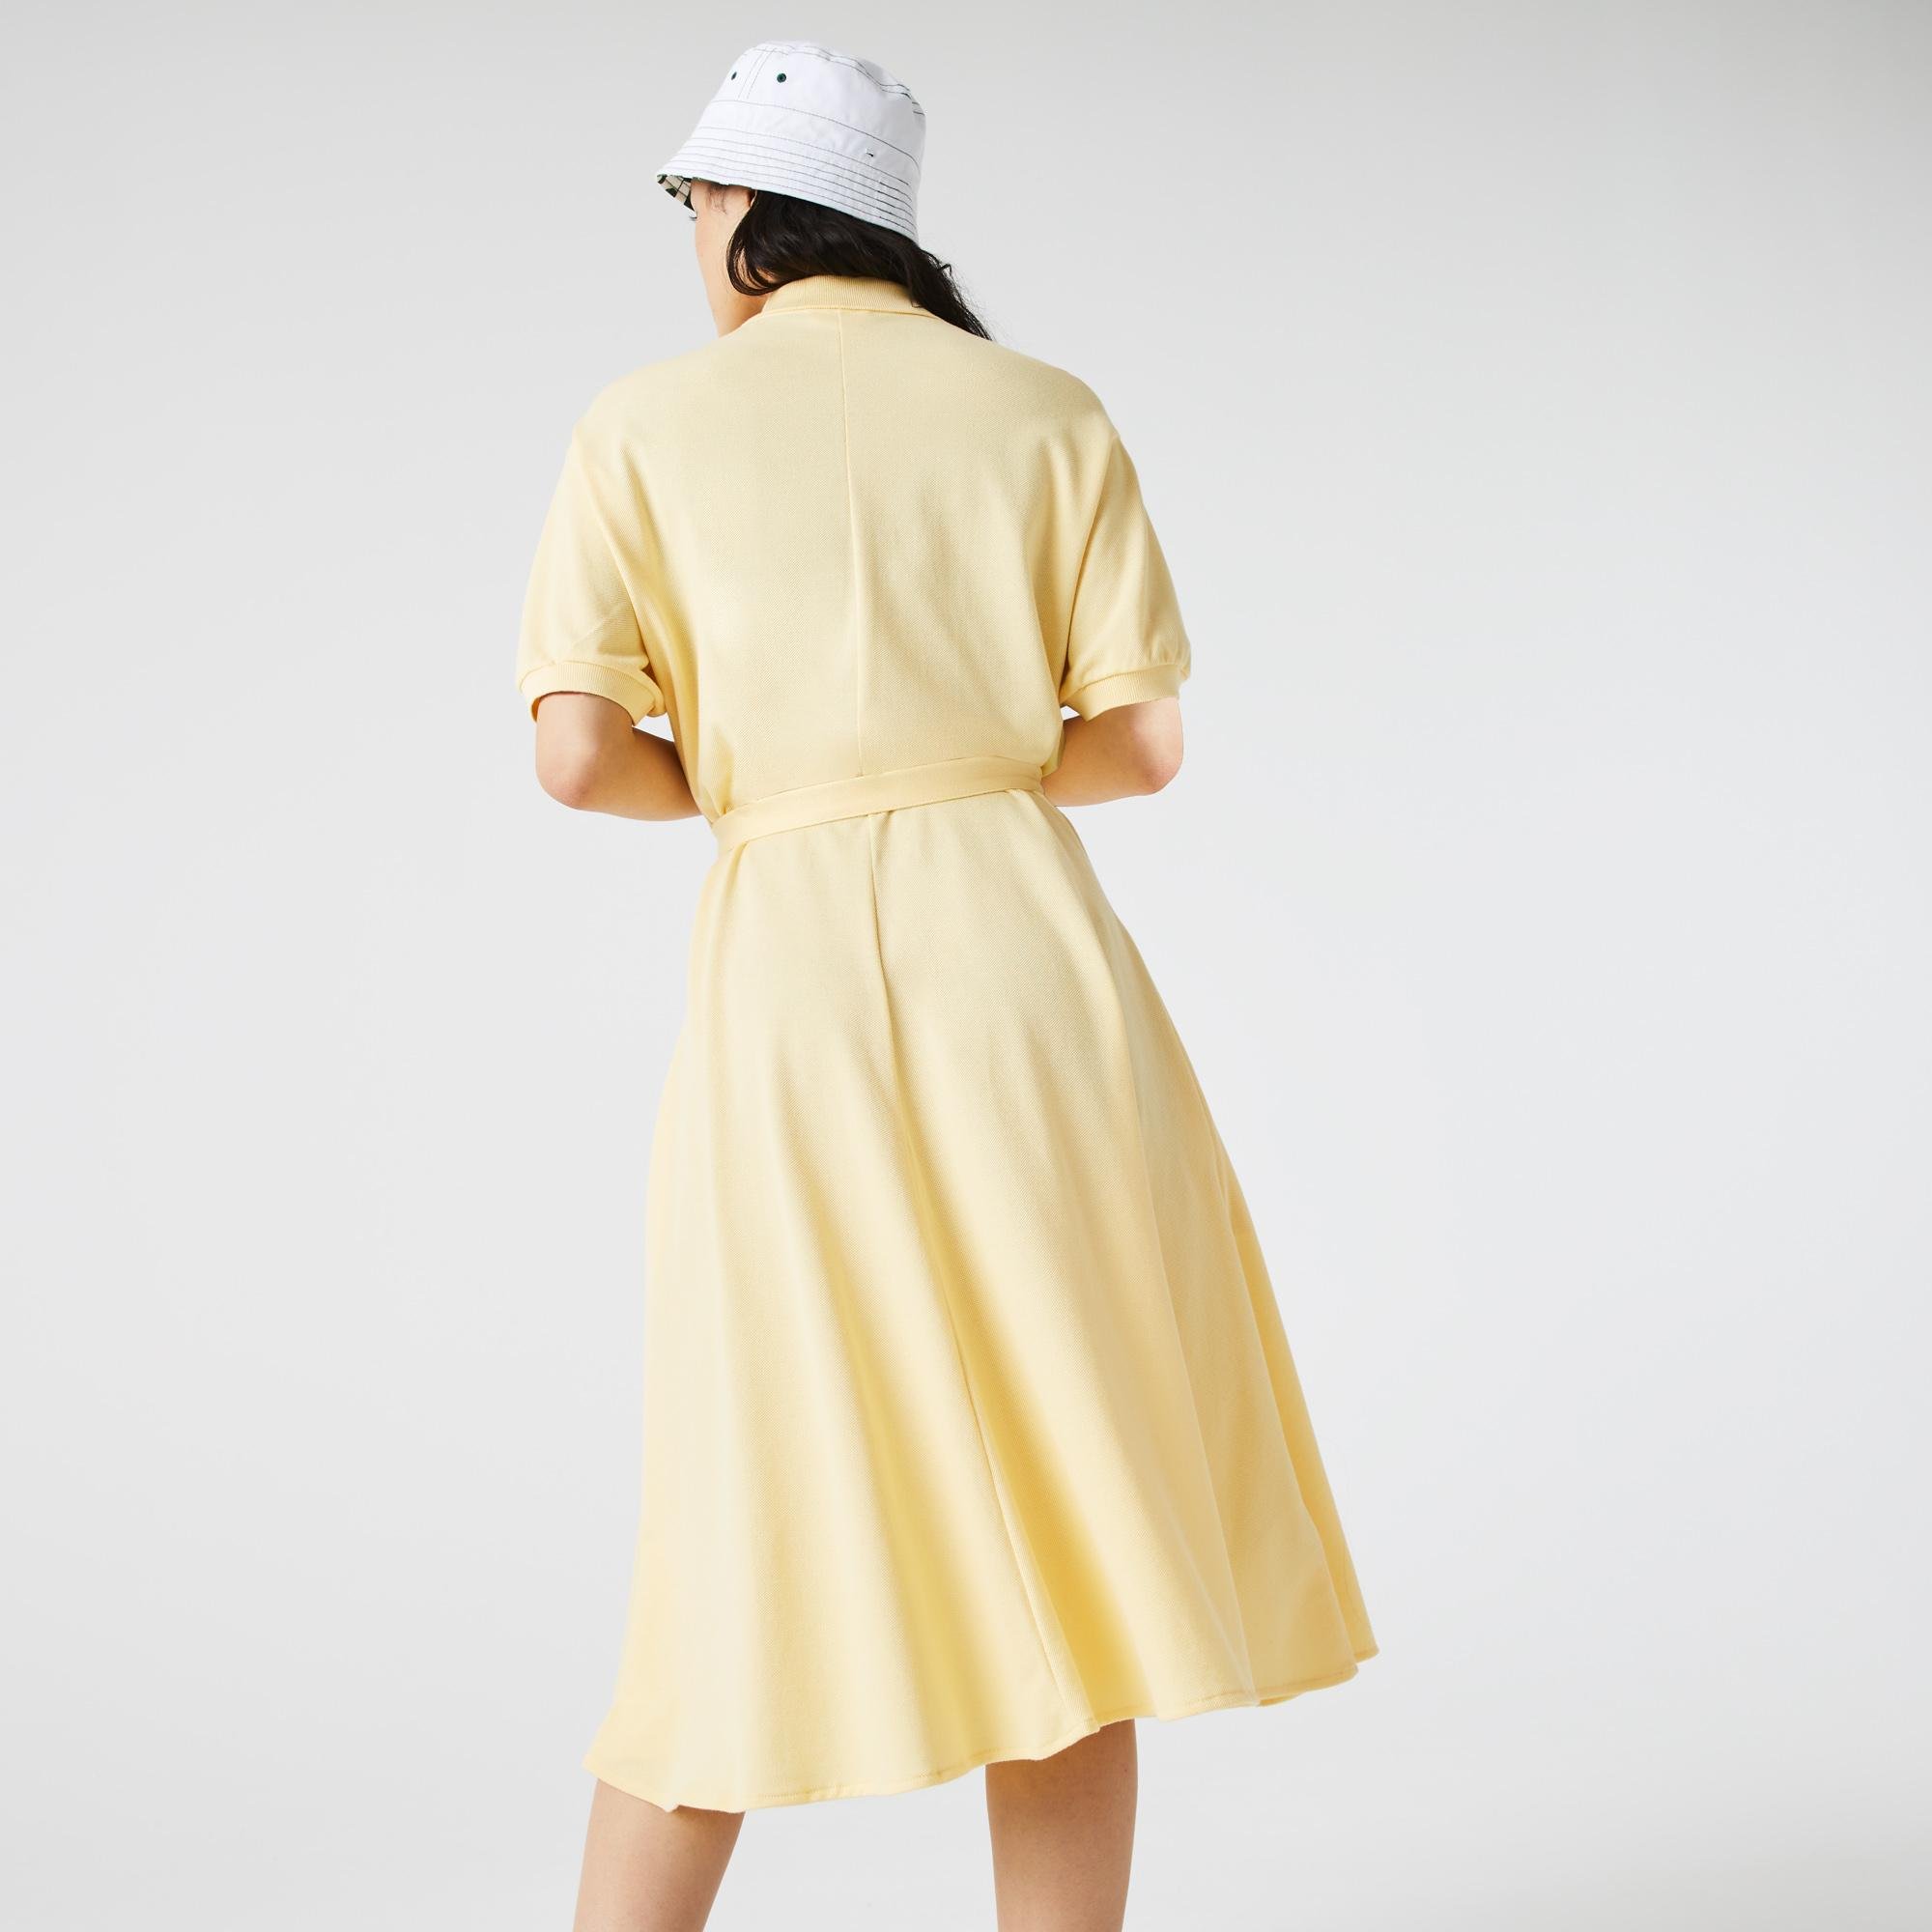 Lacoste Kadın Loose Fit Kısa Kollu Gömlek Yaka Sarı Elbise